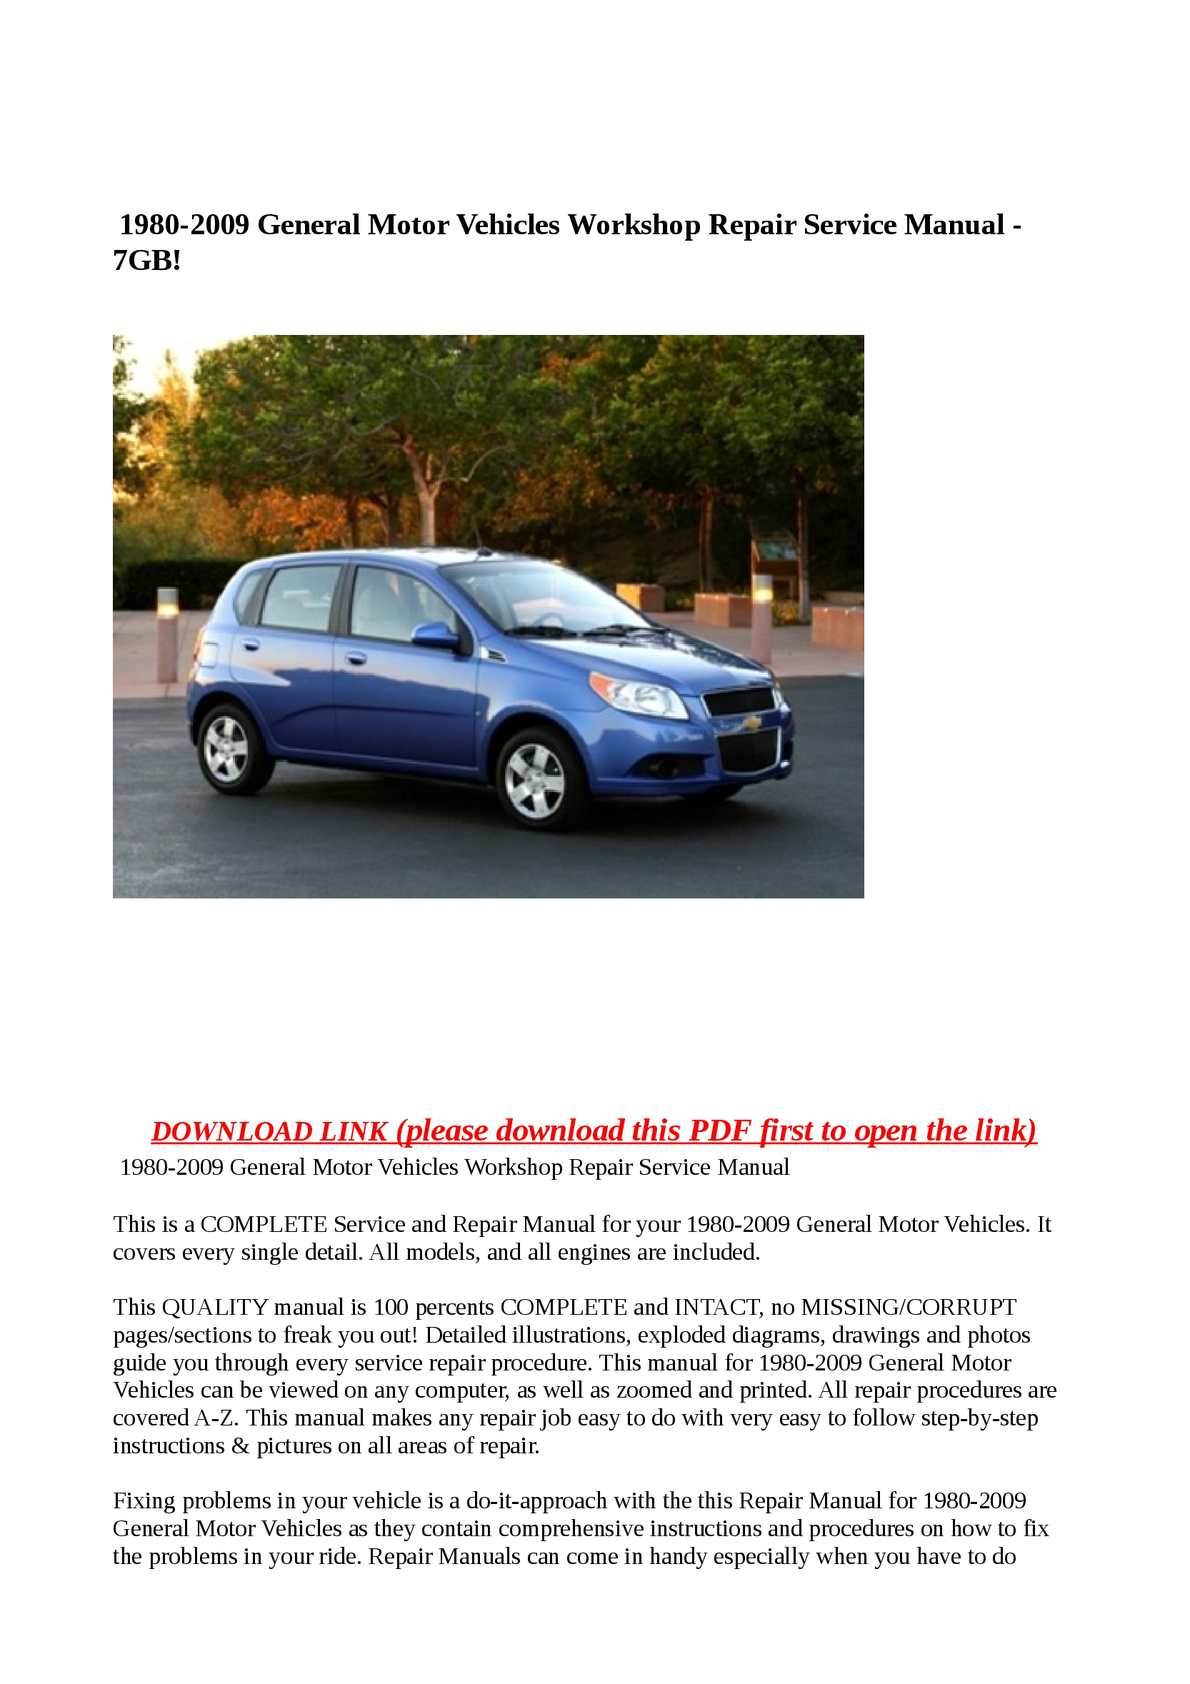 2005 chevy impala repair manual free download